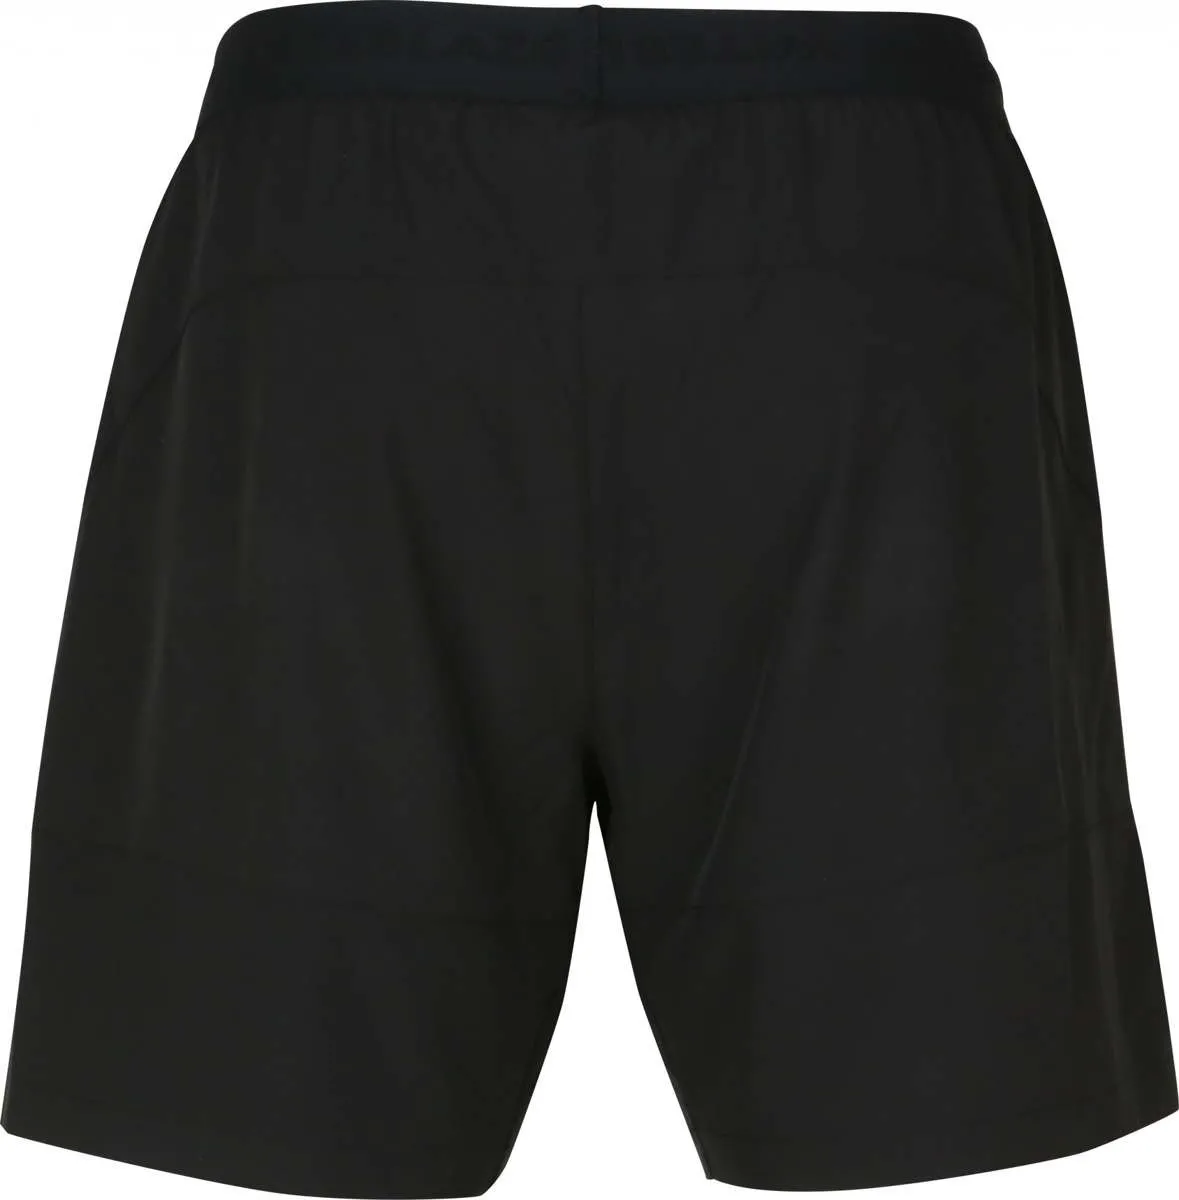 Men s shorts Scotty 2in1 shorts black